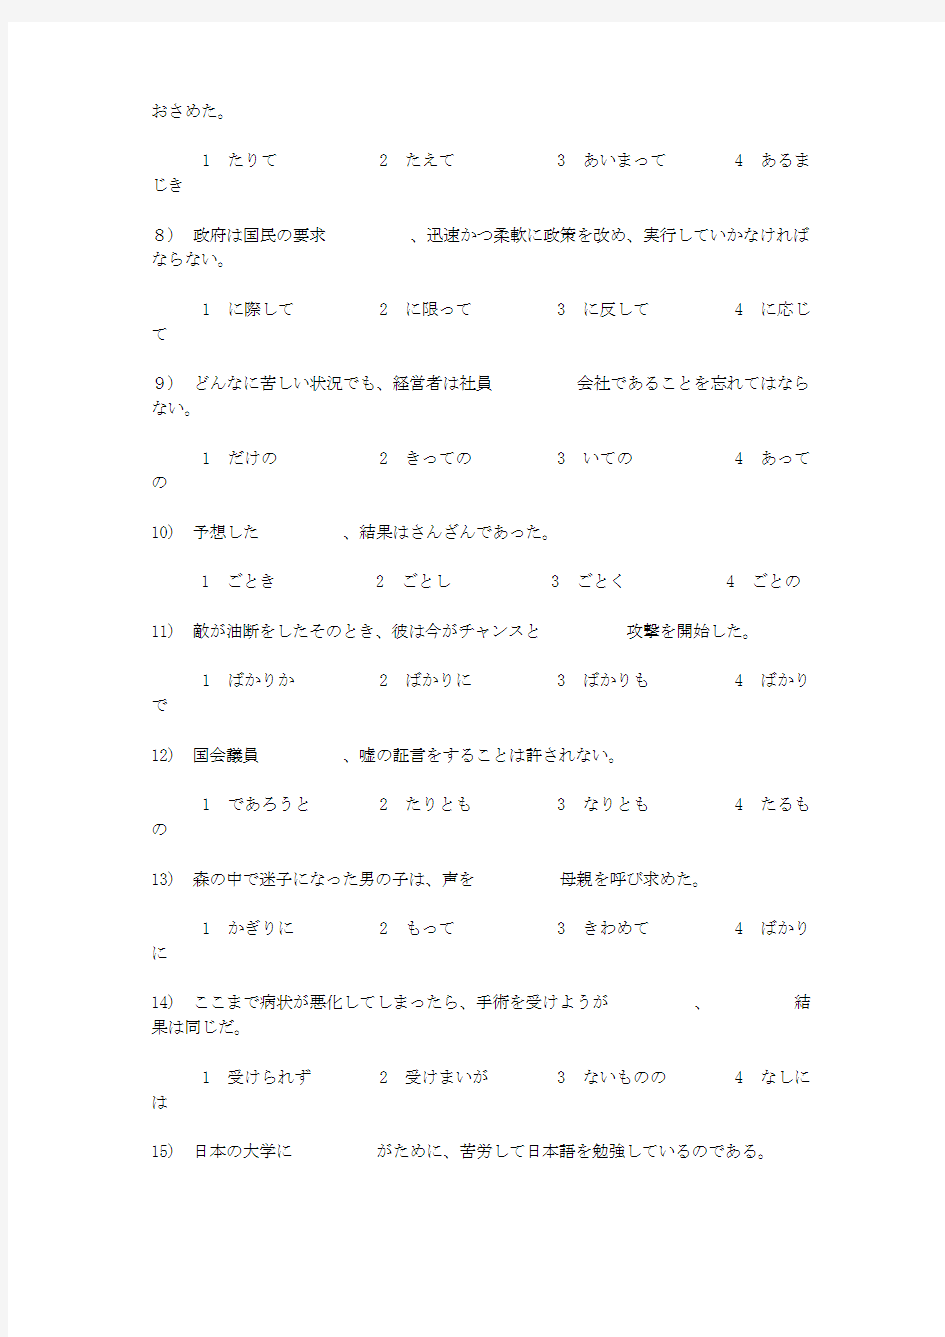 日本语能力试験1级の対策文法问题集(5回)